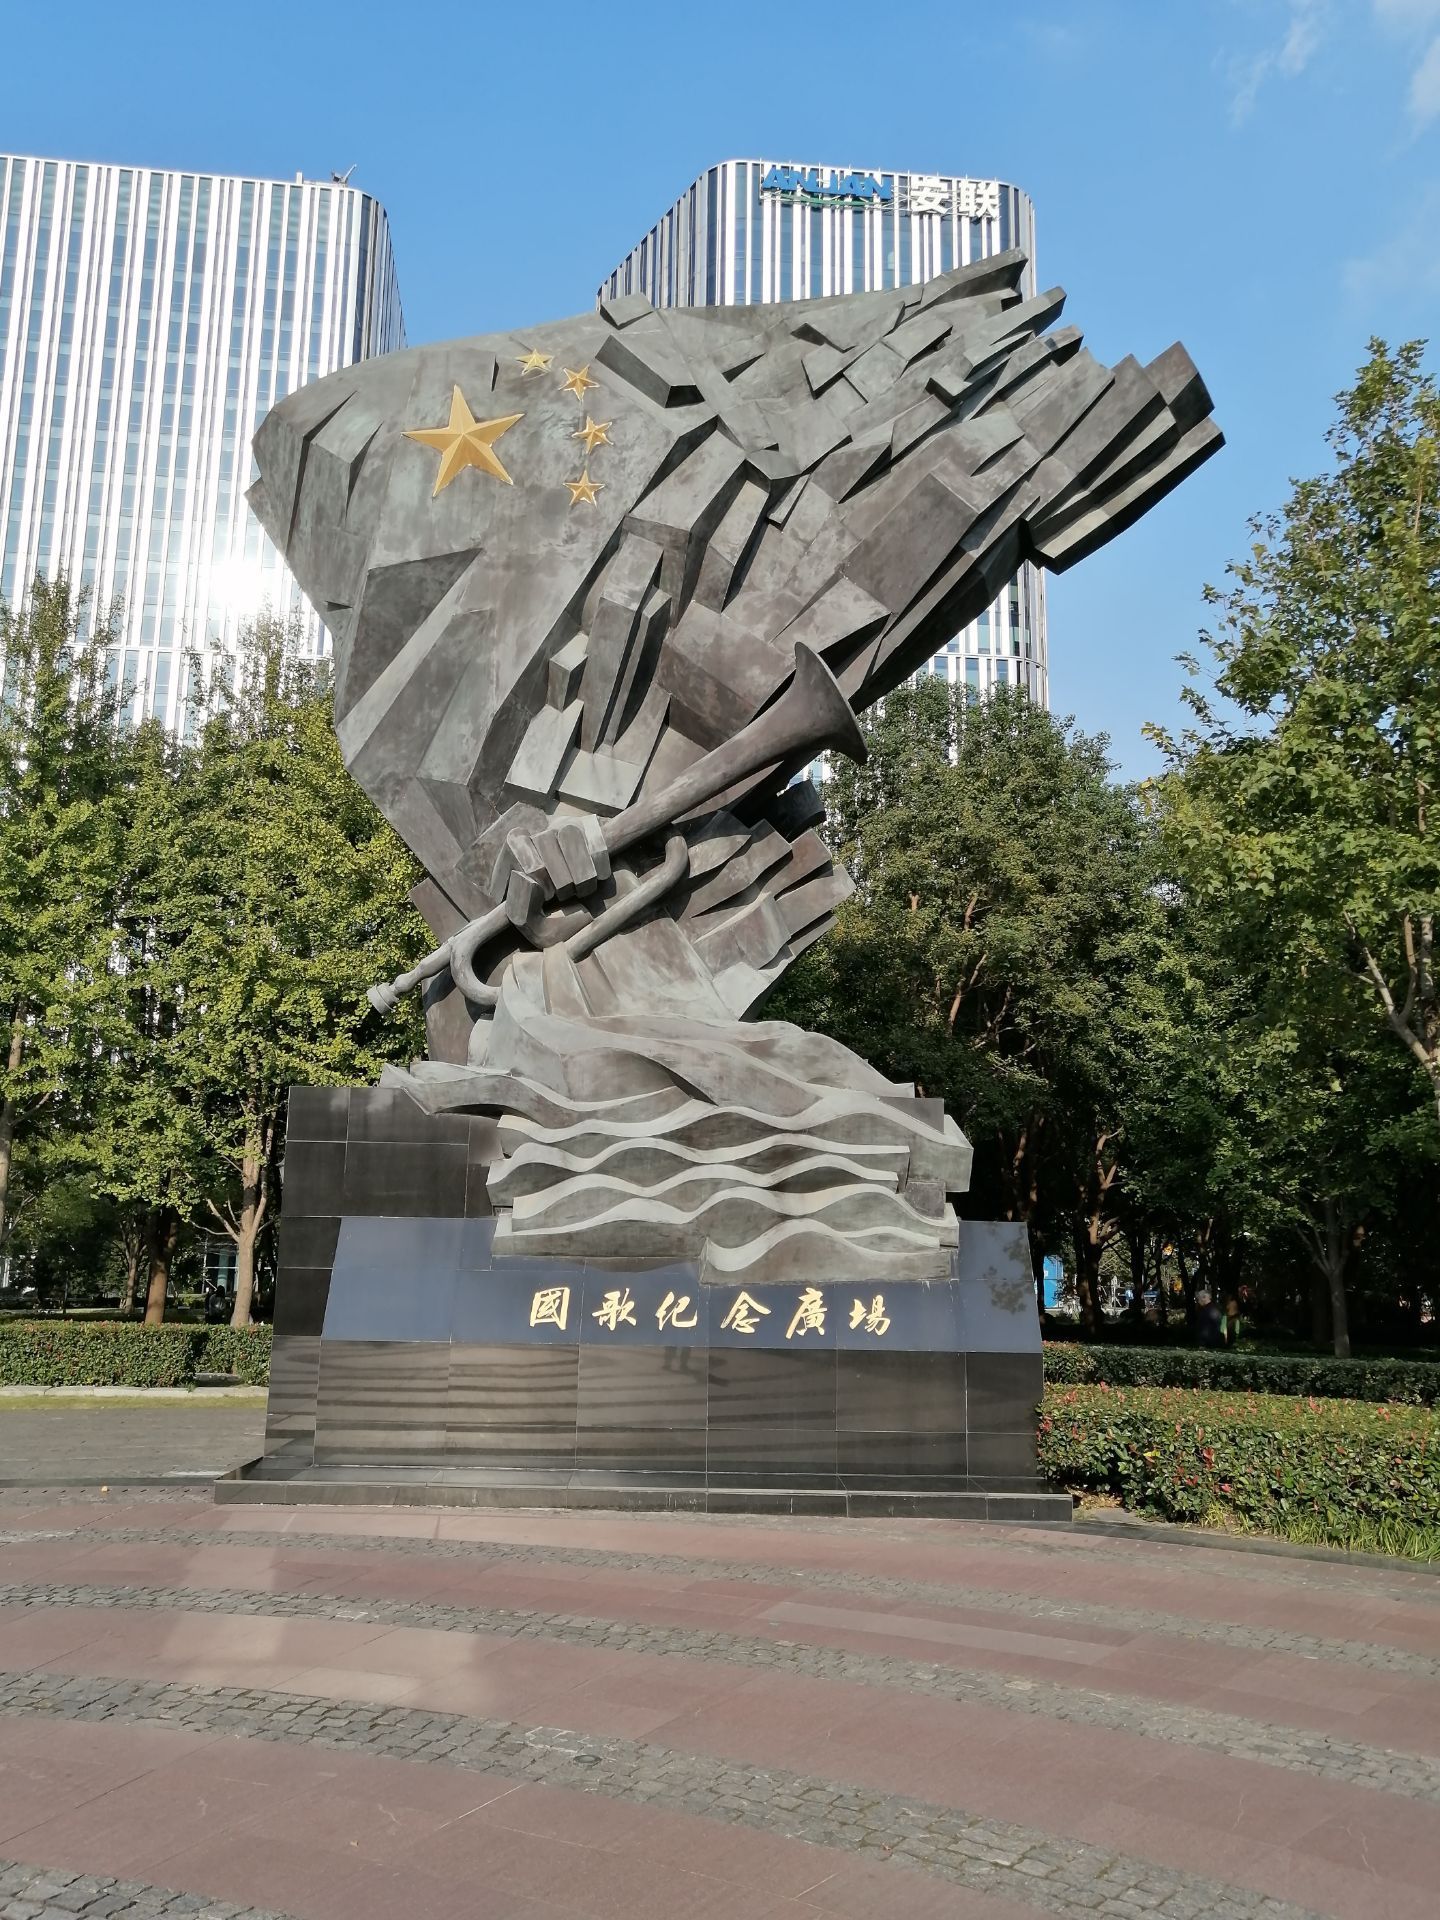 国歌纪念广场位于大连路绿地内,和国歌展示馆相伴而生